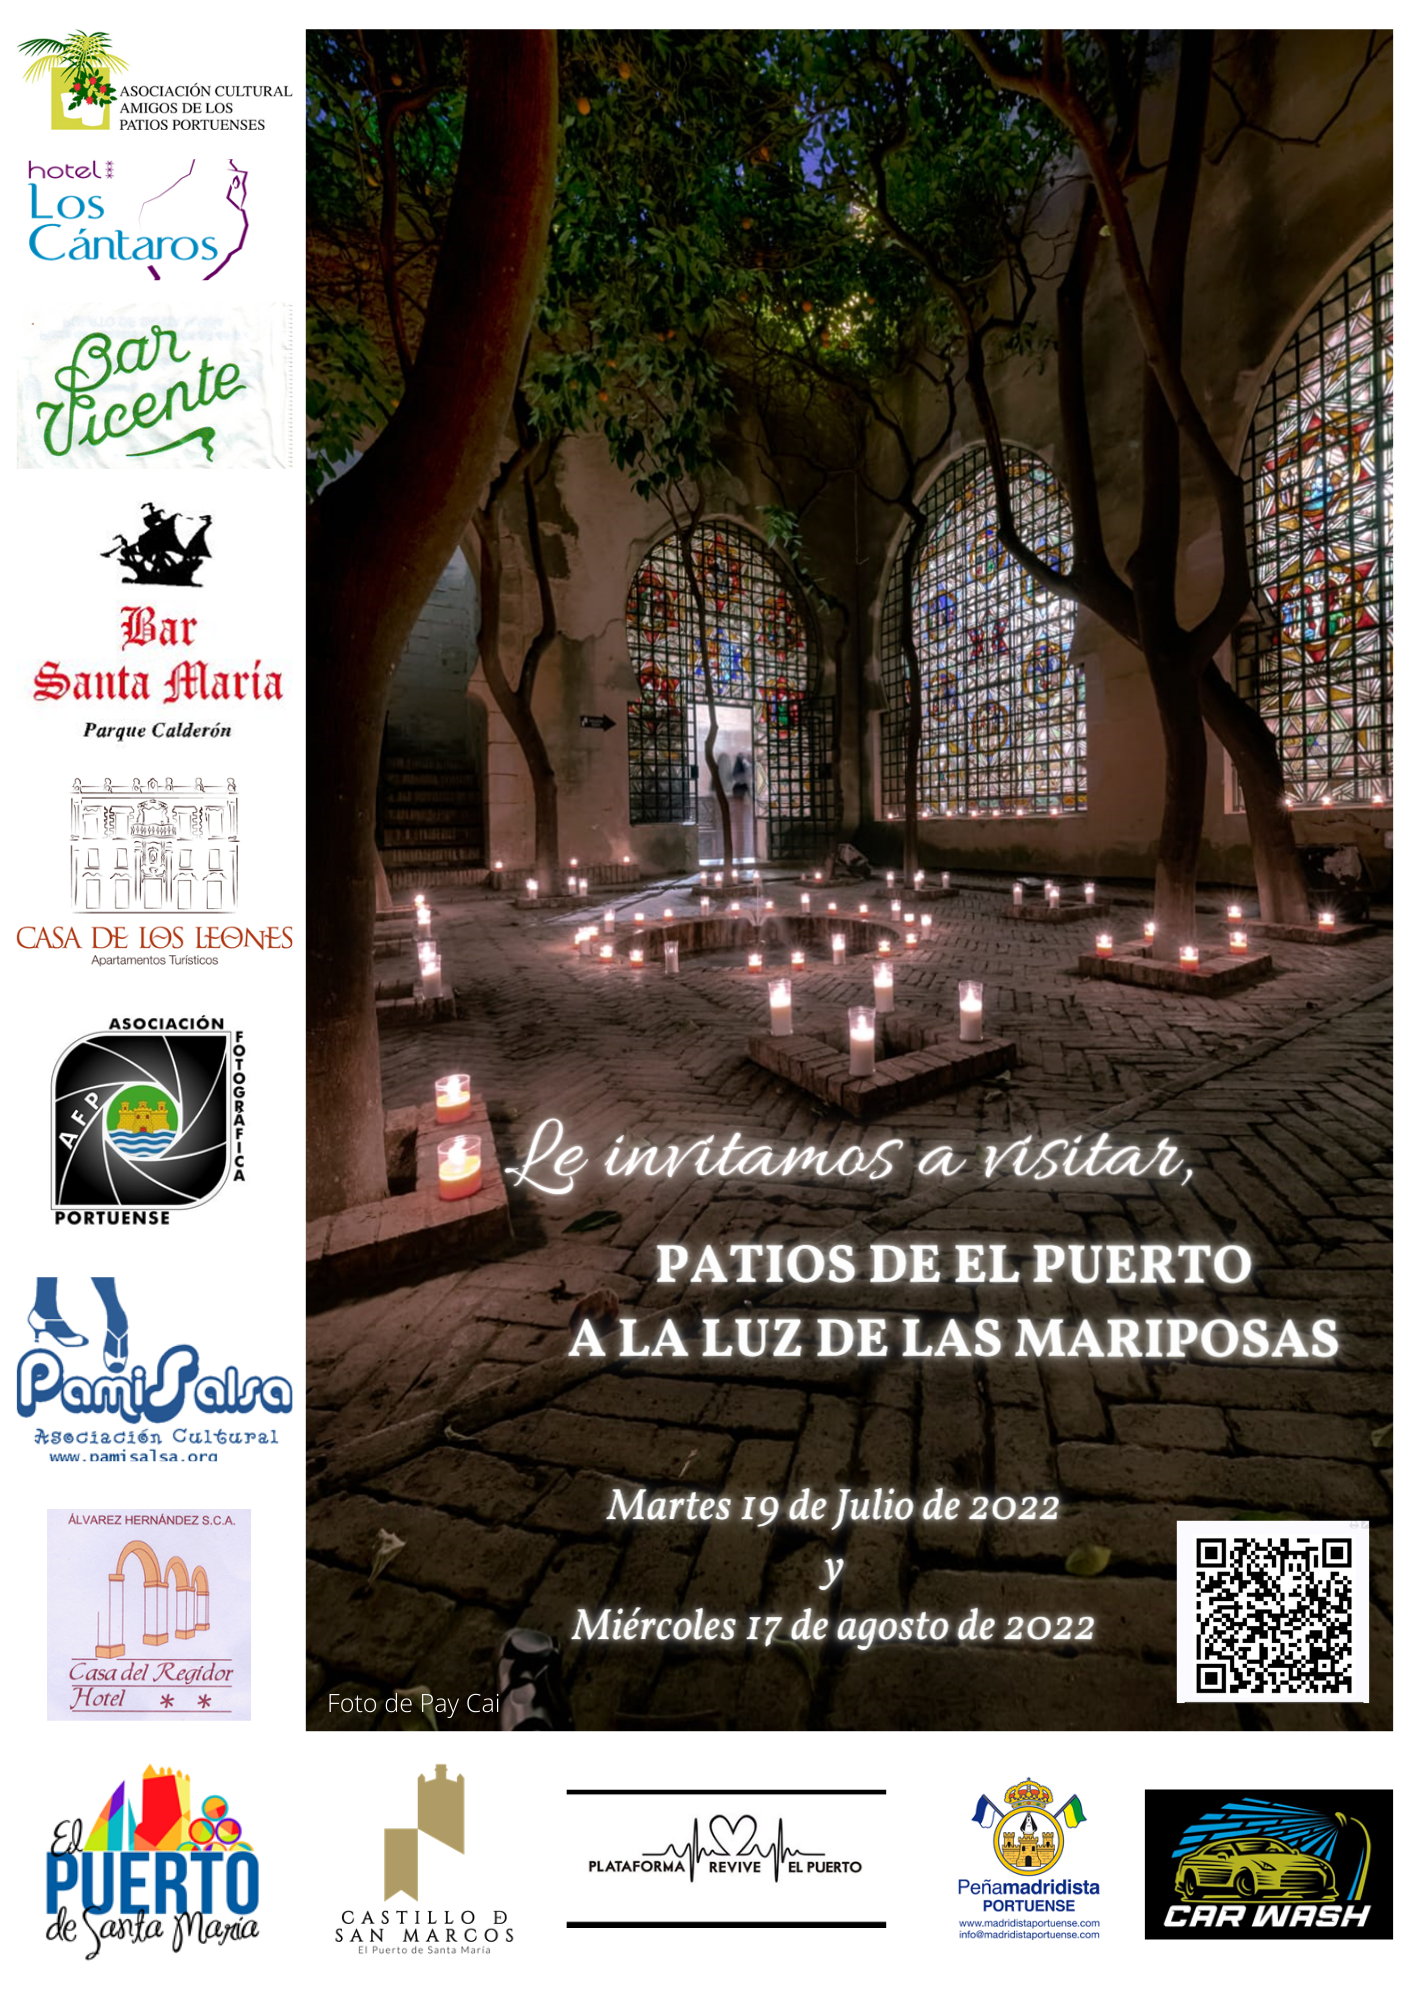 sites/default/files/2022/AGENDA/rutas-y-visitas/Cartel patios-mariposas.png